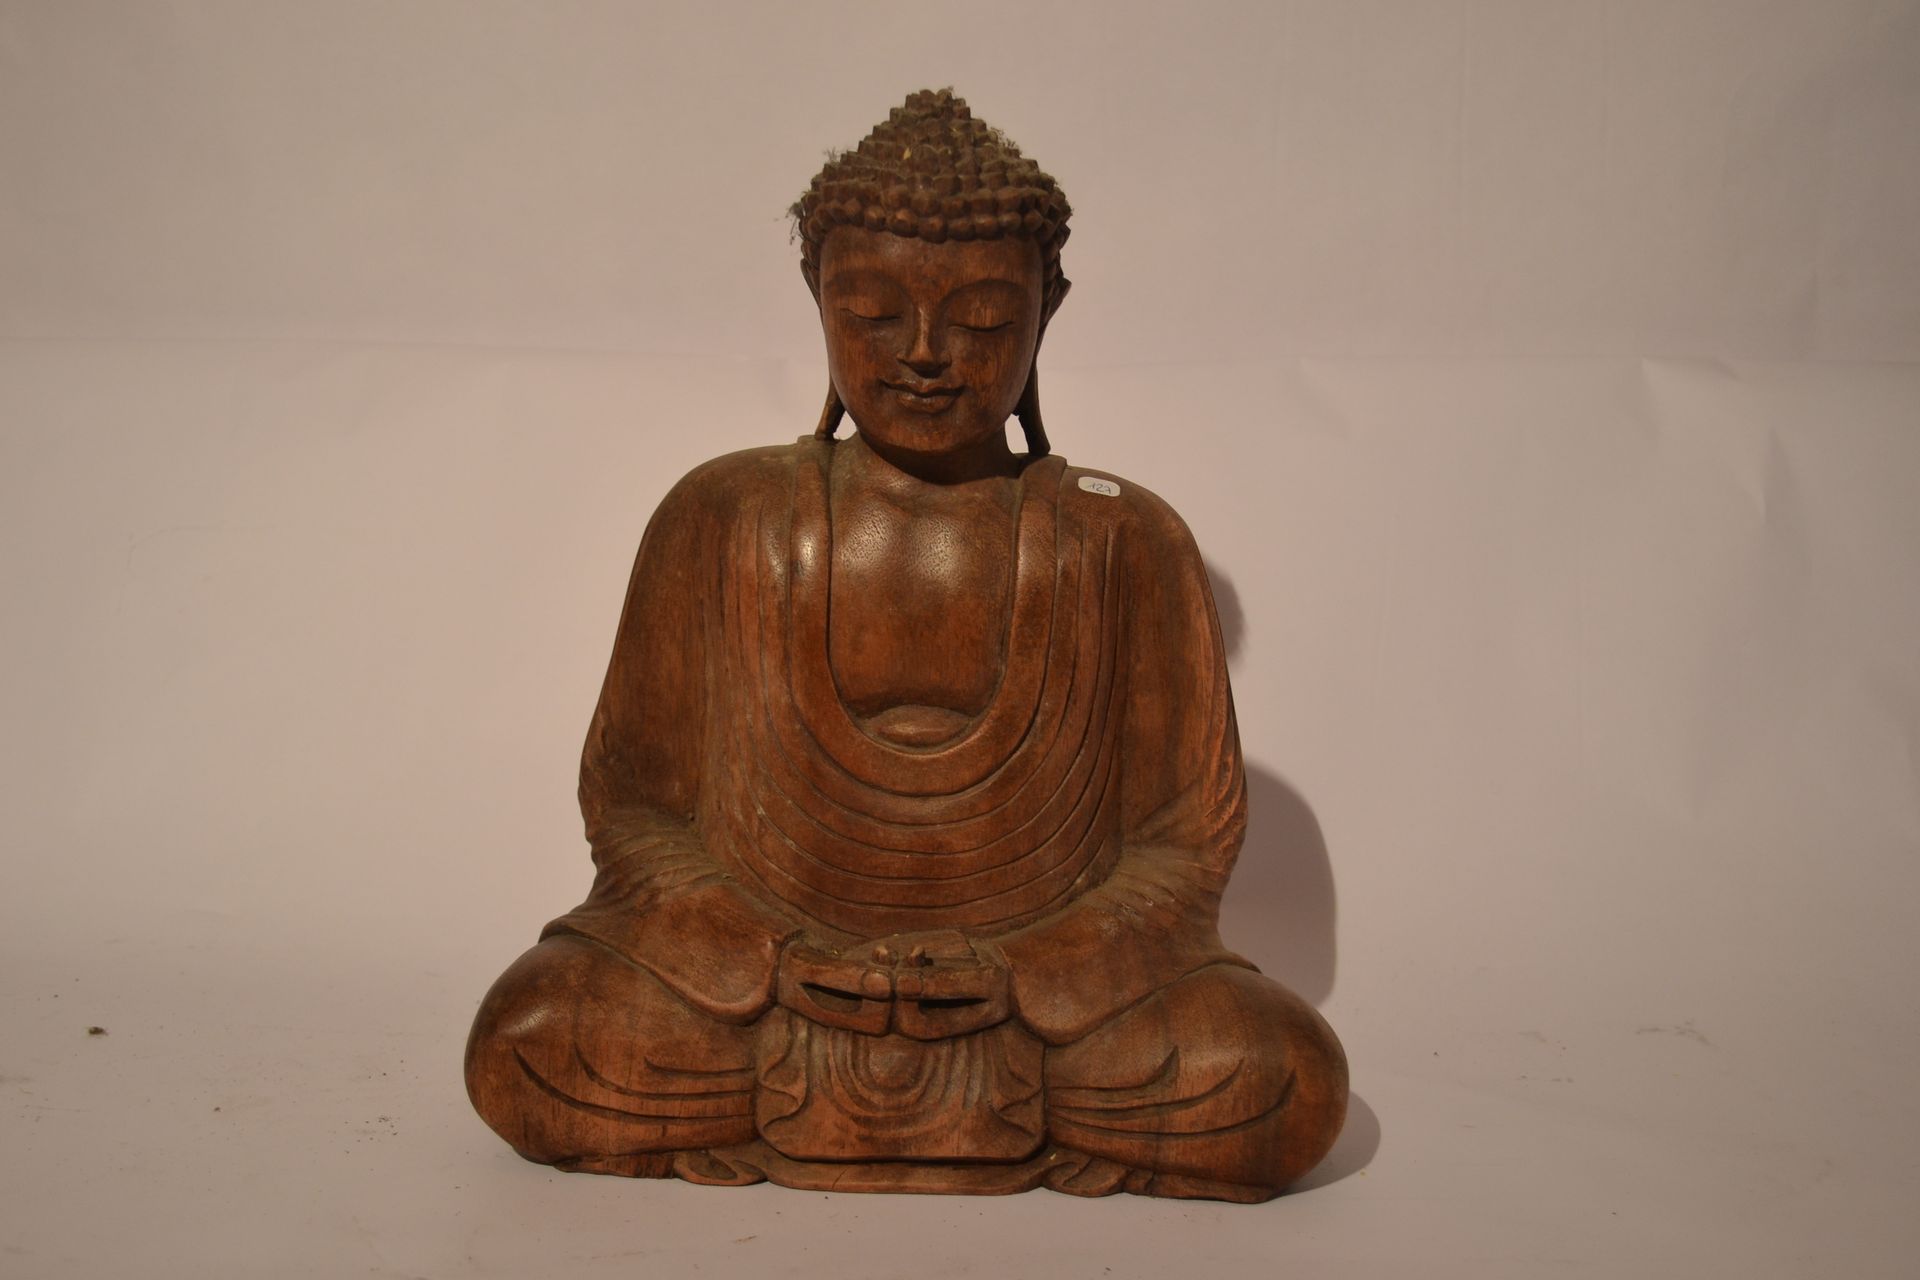 Null 坐着的印度教佛像。

苏木

30 x 25 x 12

重量：2公斤。